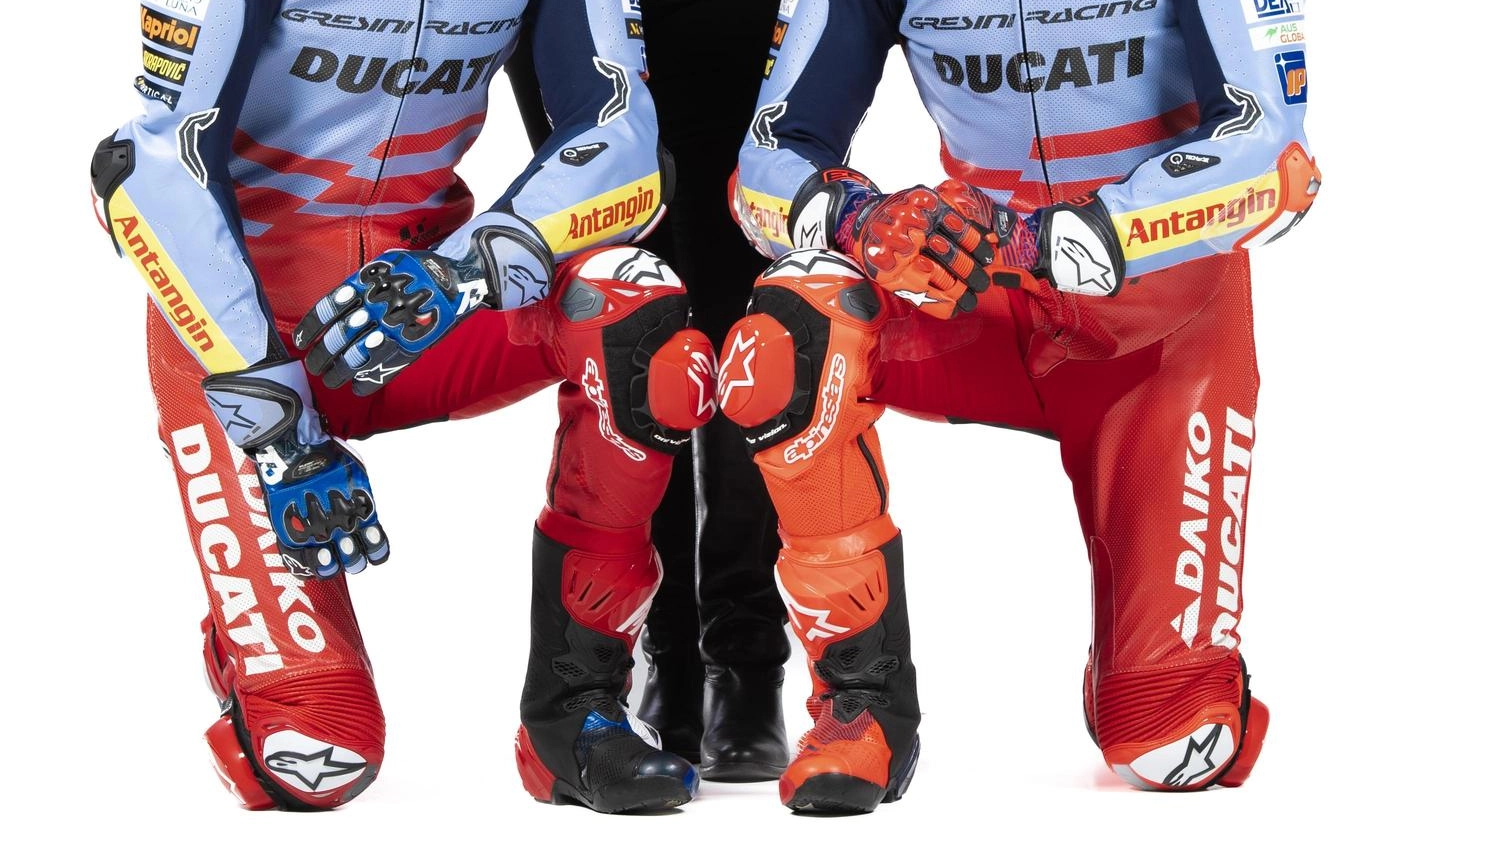 È già una Ducati su misura per Marquez: "Contento come un bimbo con scarpe nuove"